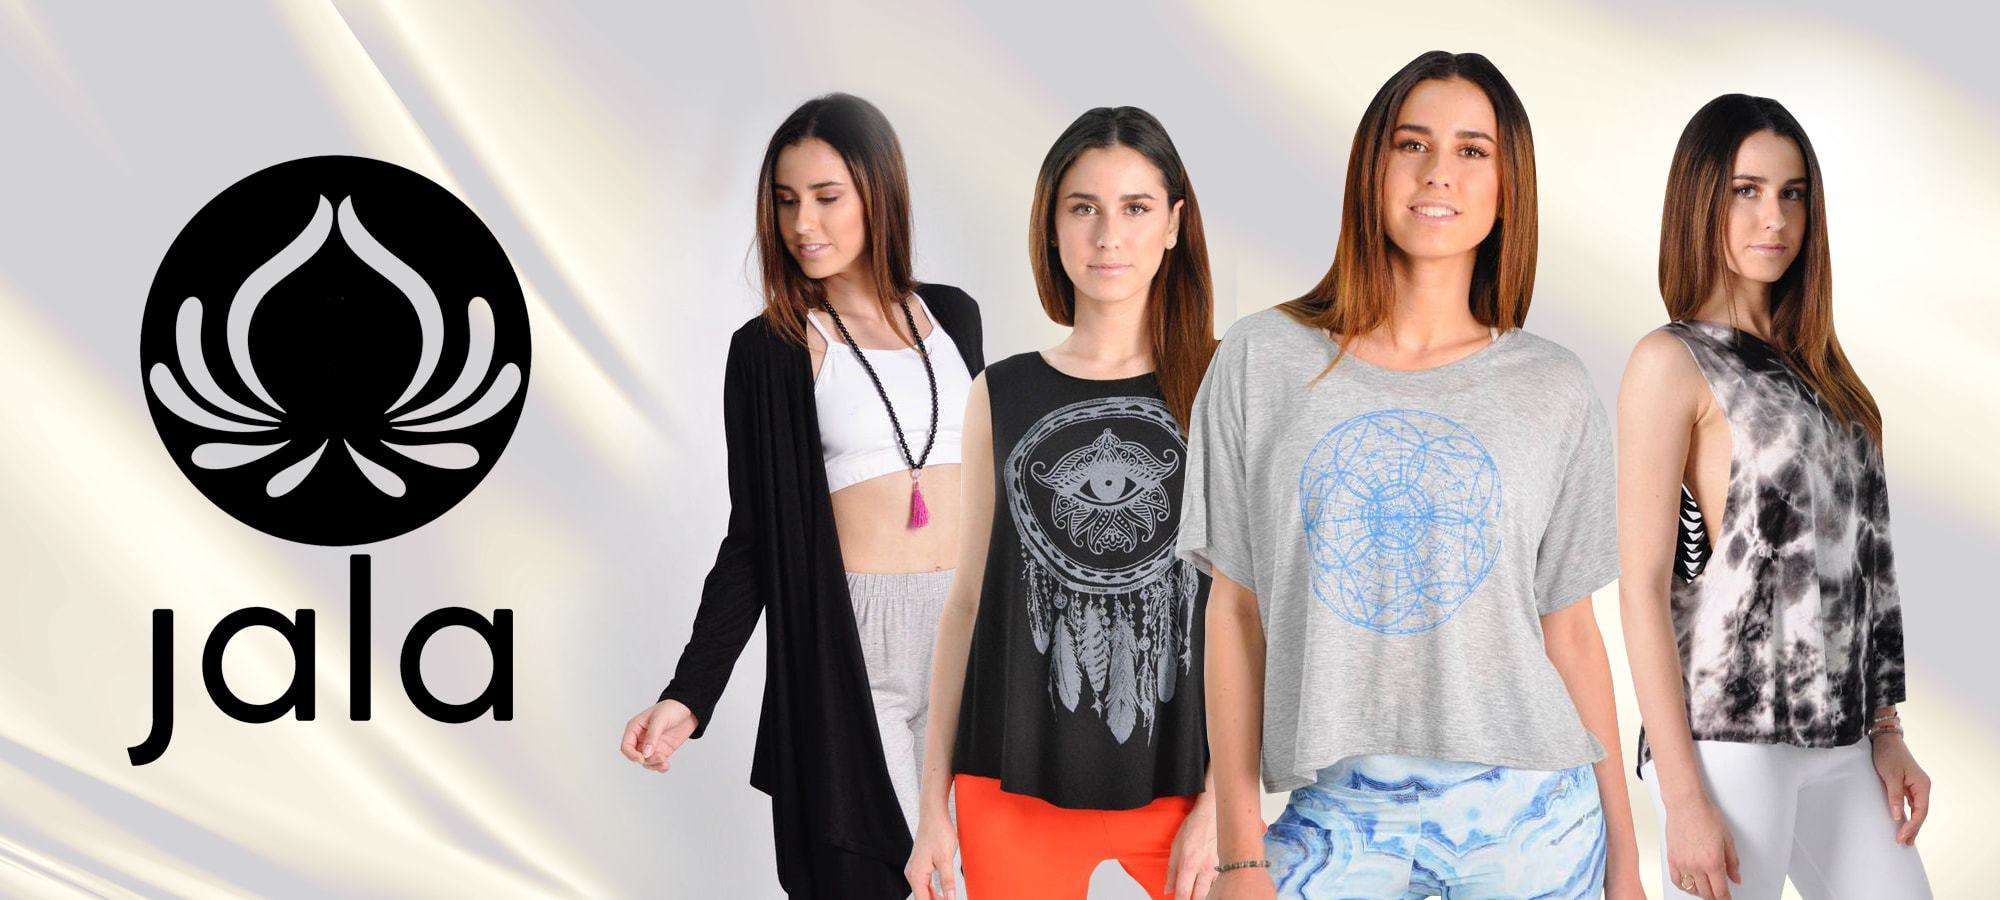 Jala Clothing - Marque de vêtements inspirée du yoga